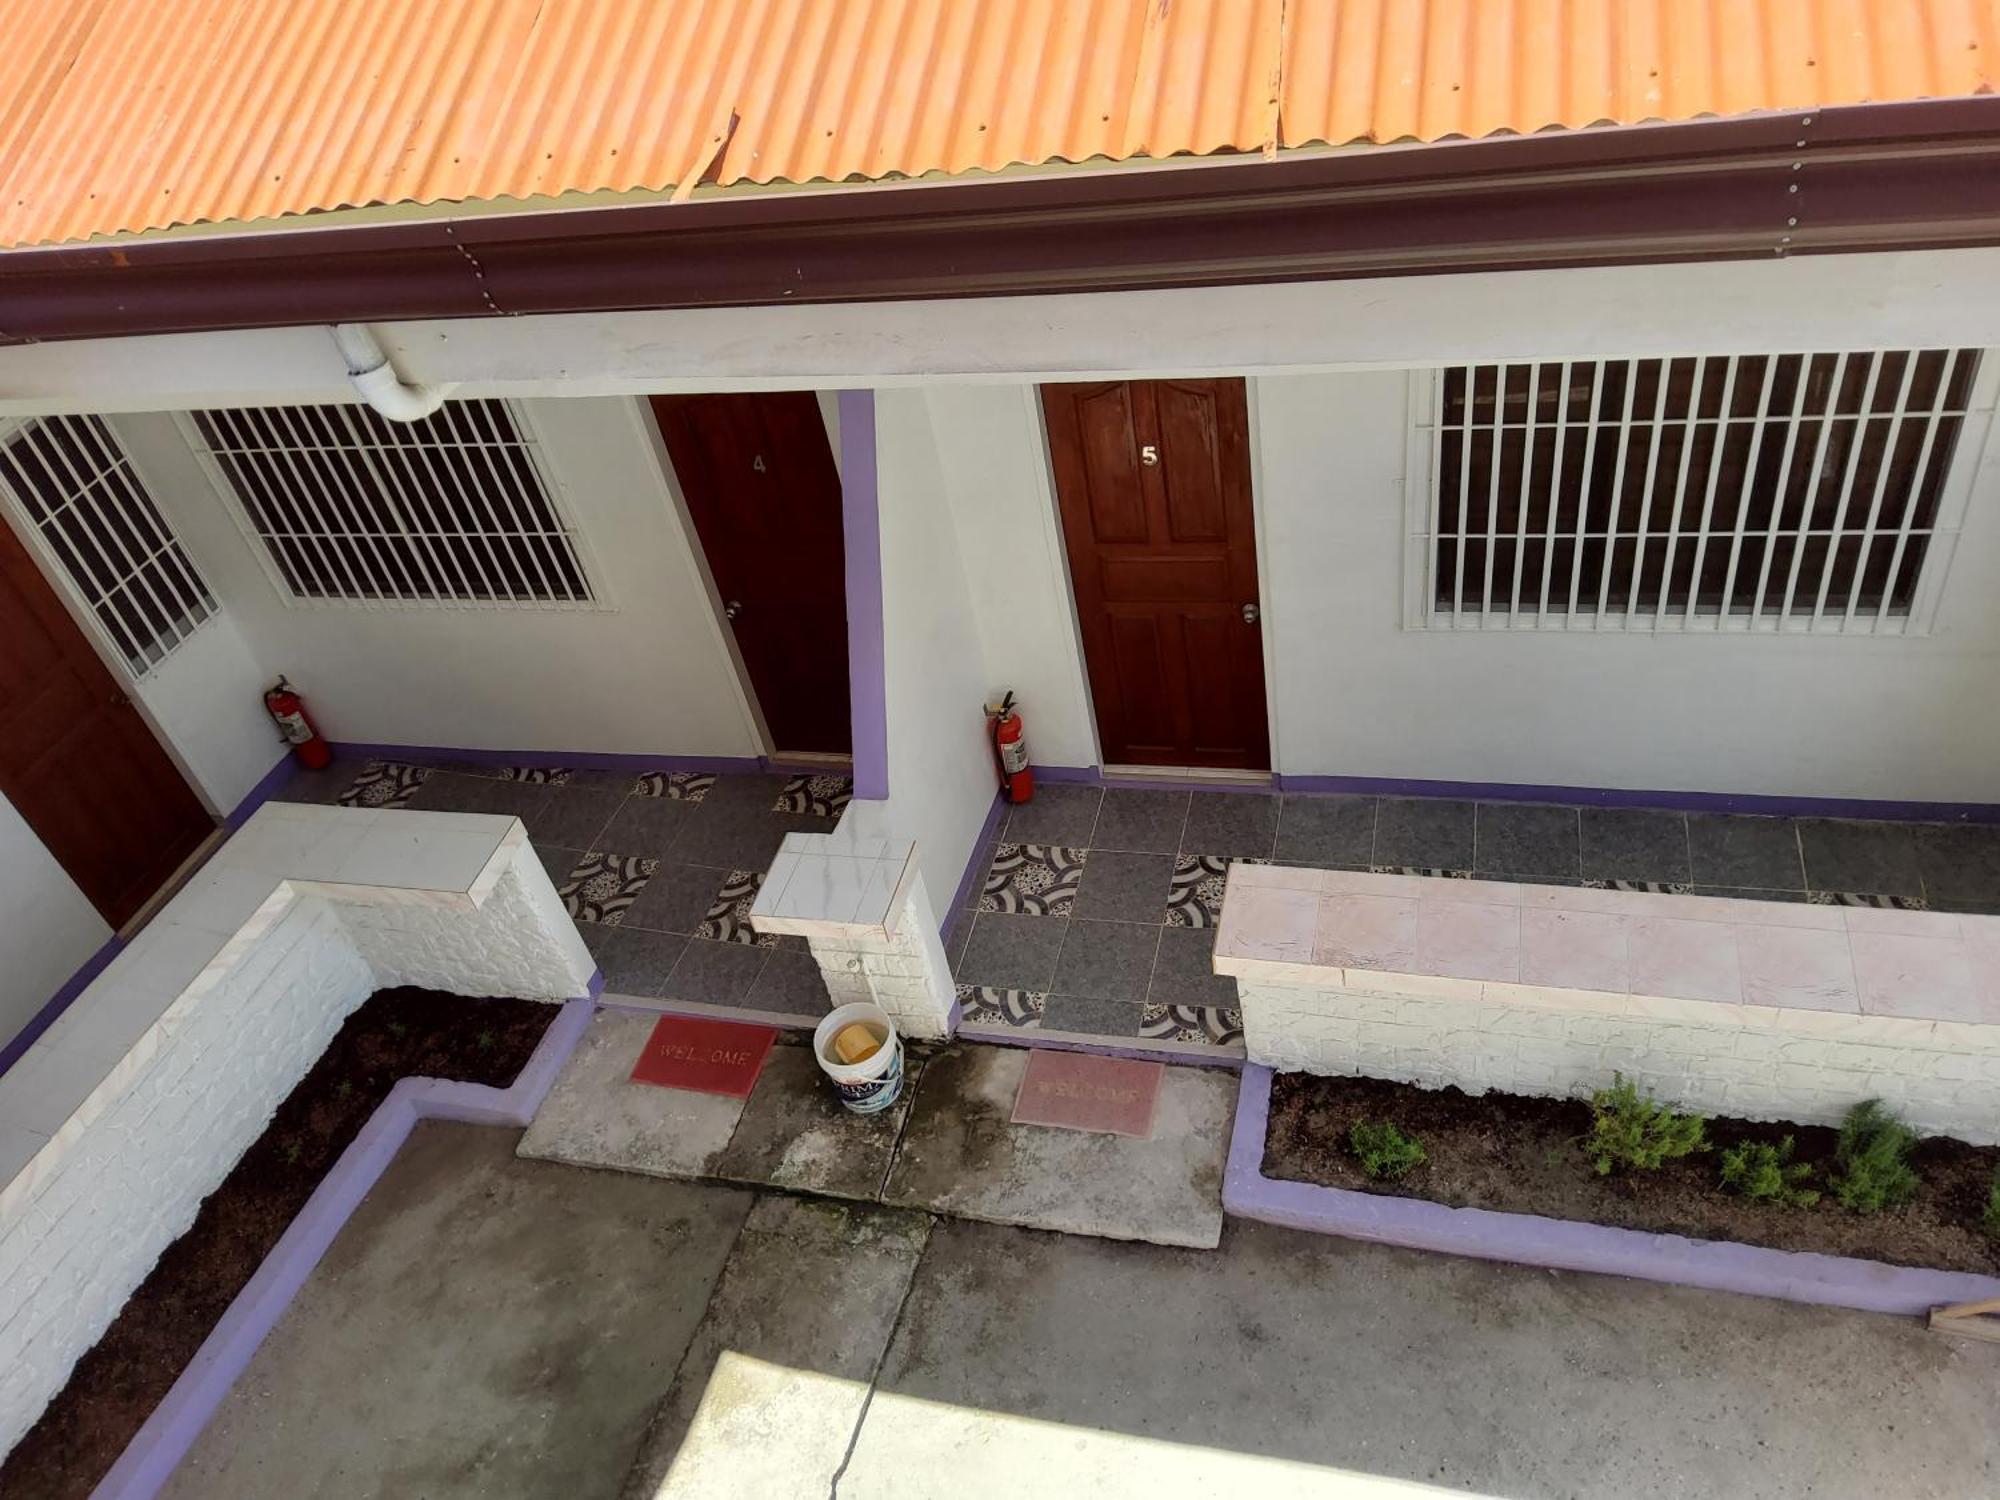 Mandurah'S Inn, Malapascua Exterior photo